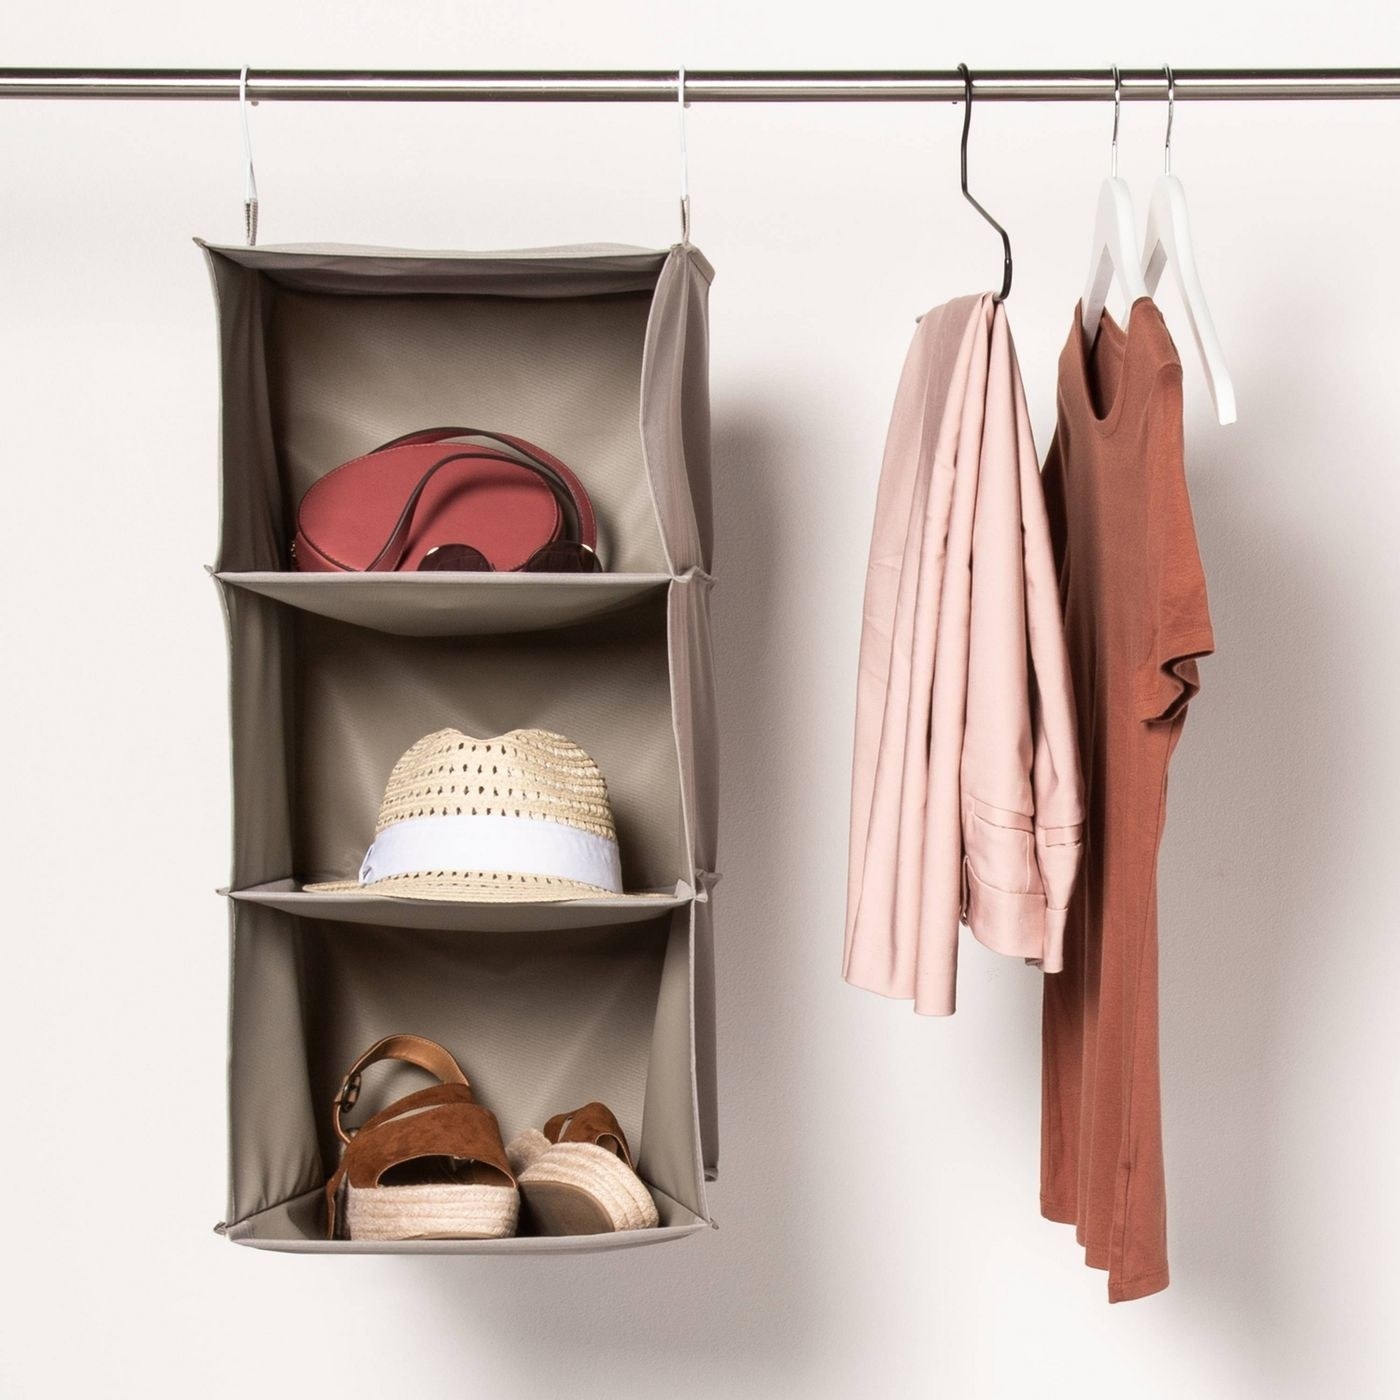 An image of a three-shelf closet organizer